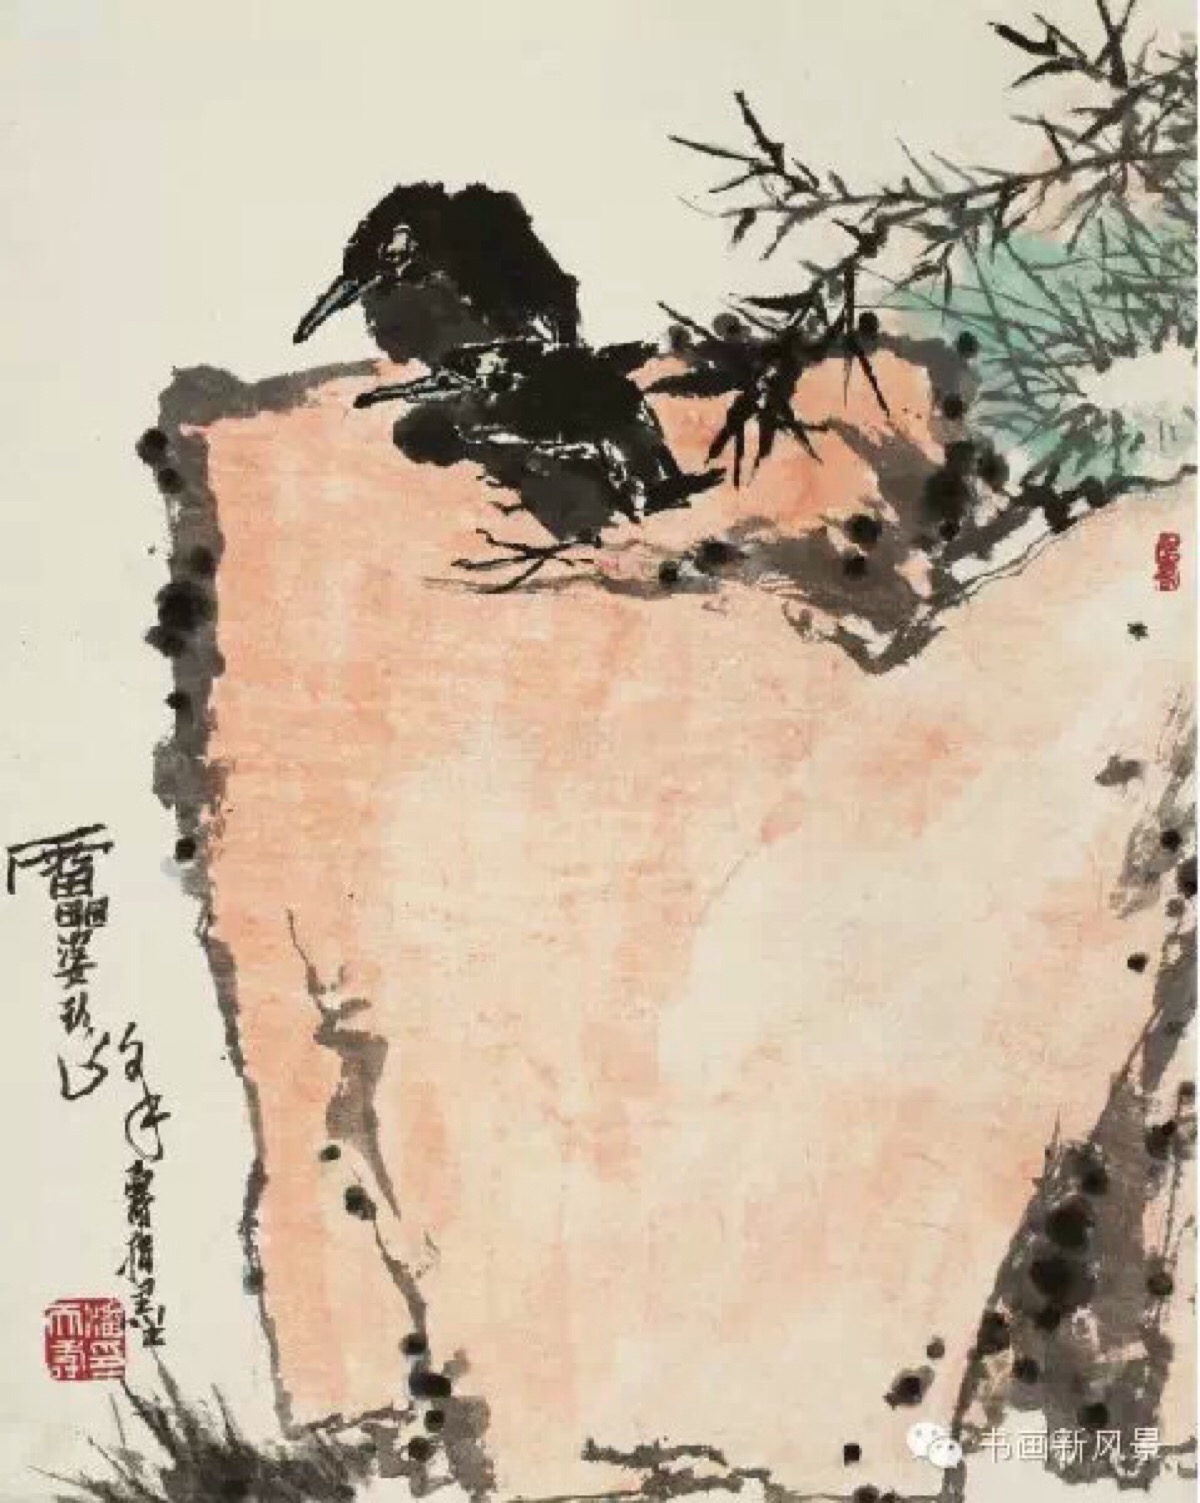 潘天寿《竹石栖禽图》(2011年4月上海恒利,1322.5万元)是指墨画作品.